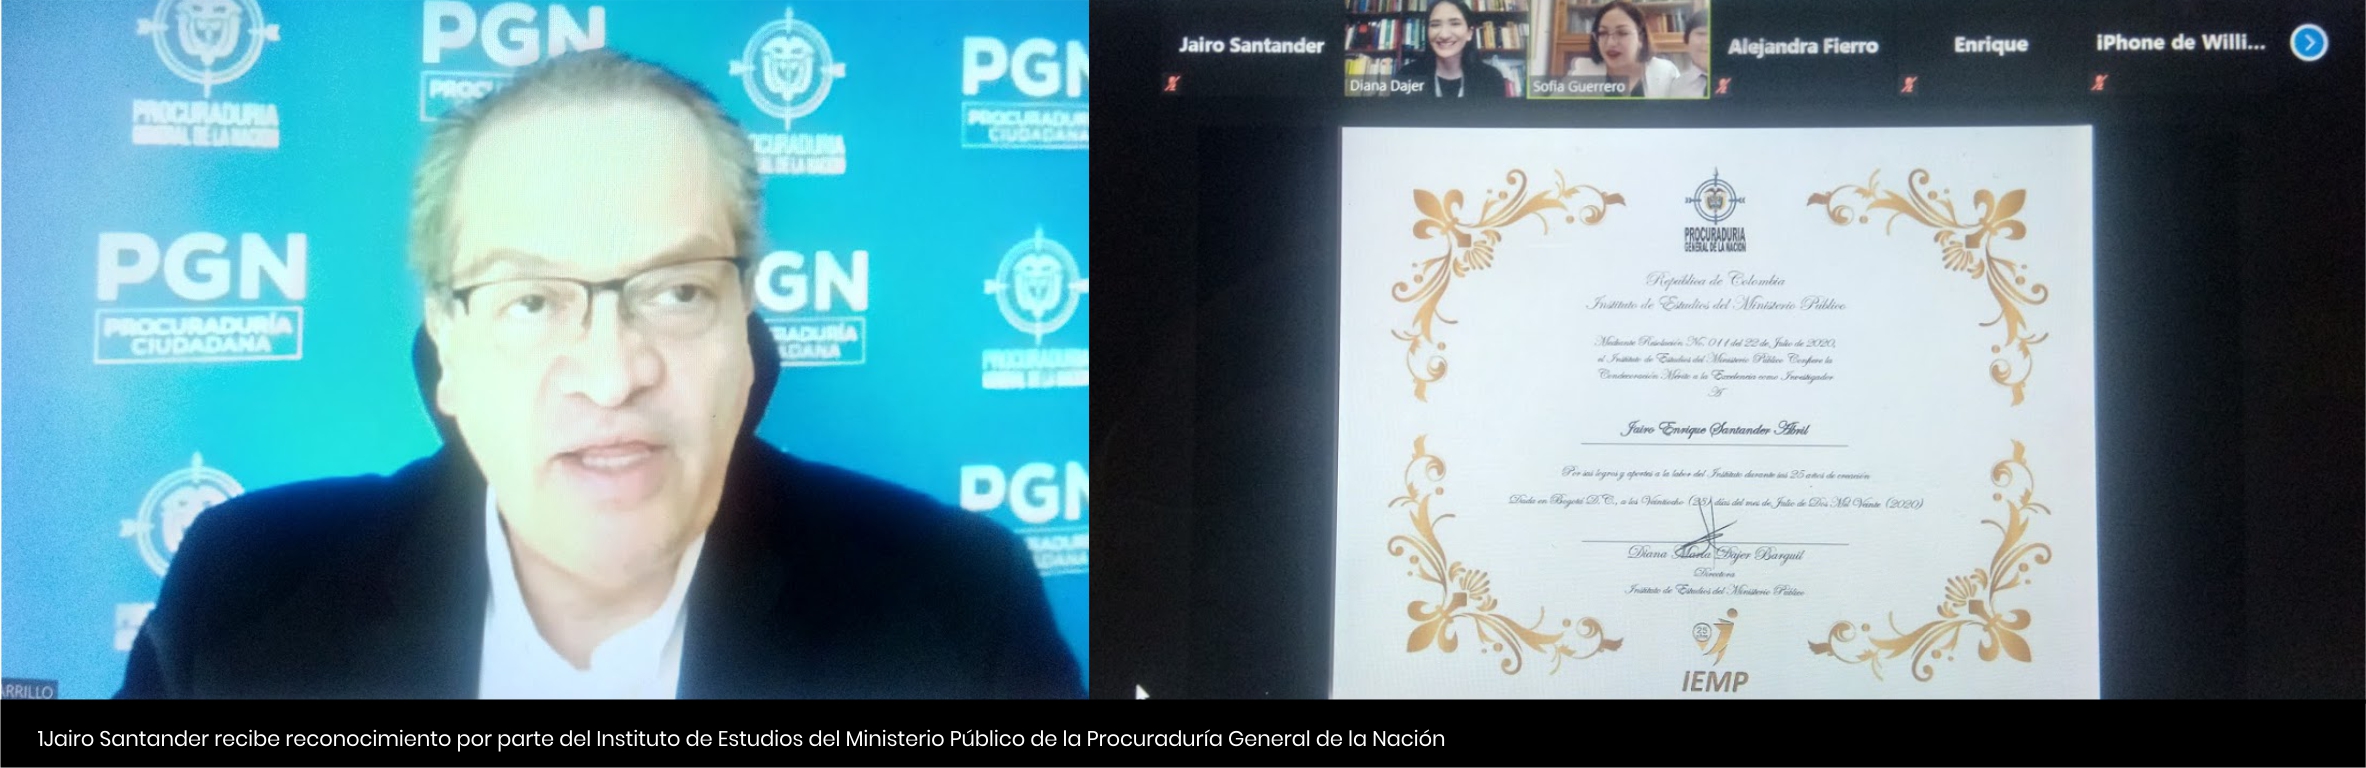 Jairo Santander recibe reconocimiento por parte del del Instituto de Estudios del Ministerio Público de la Procuraduría General de la Nación - Cider | Uniandes